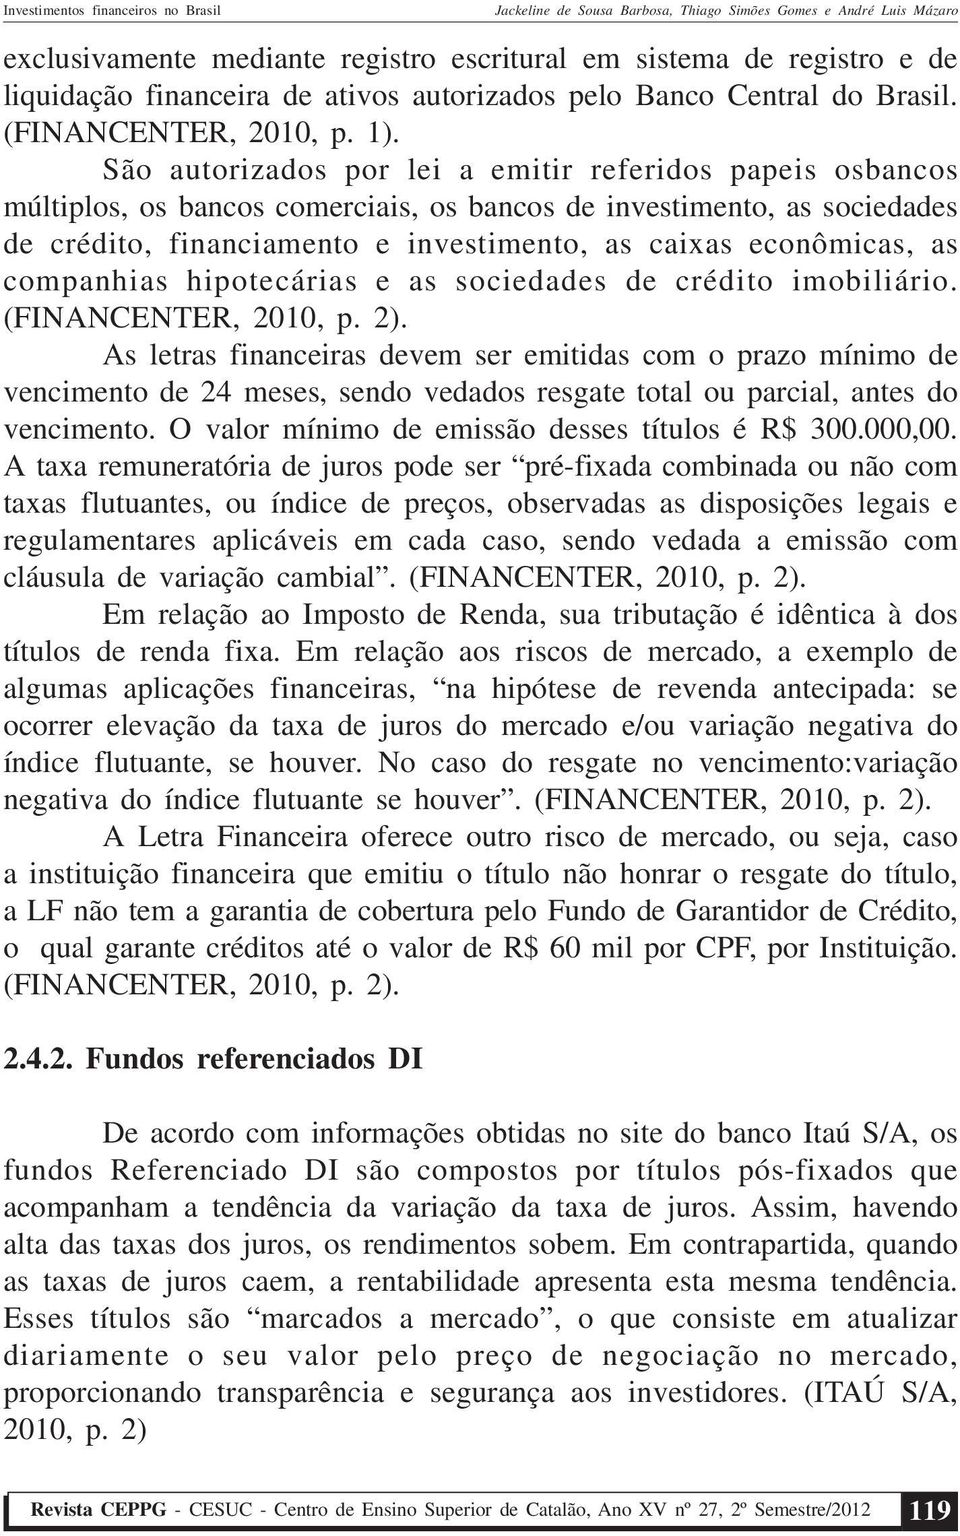 companhias hipotecárias e as sociedades de crédito imobiliário. (FINANCENTER, 2010, p. 2).